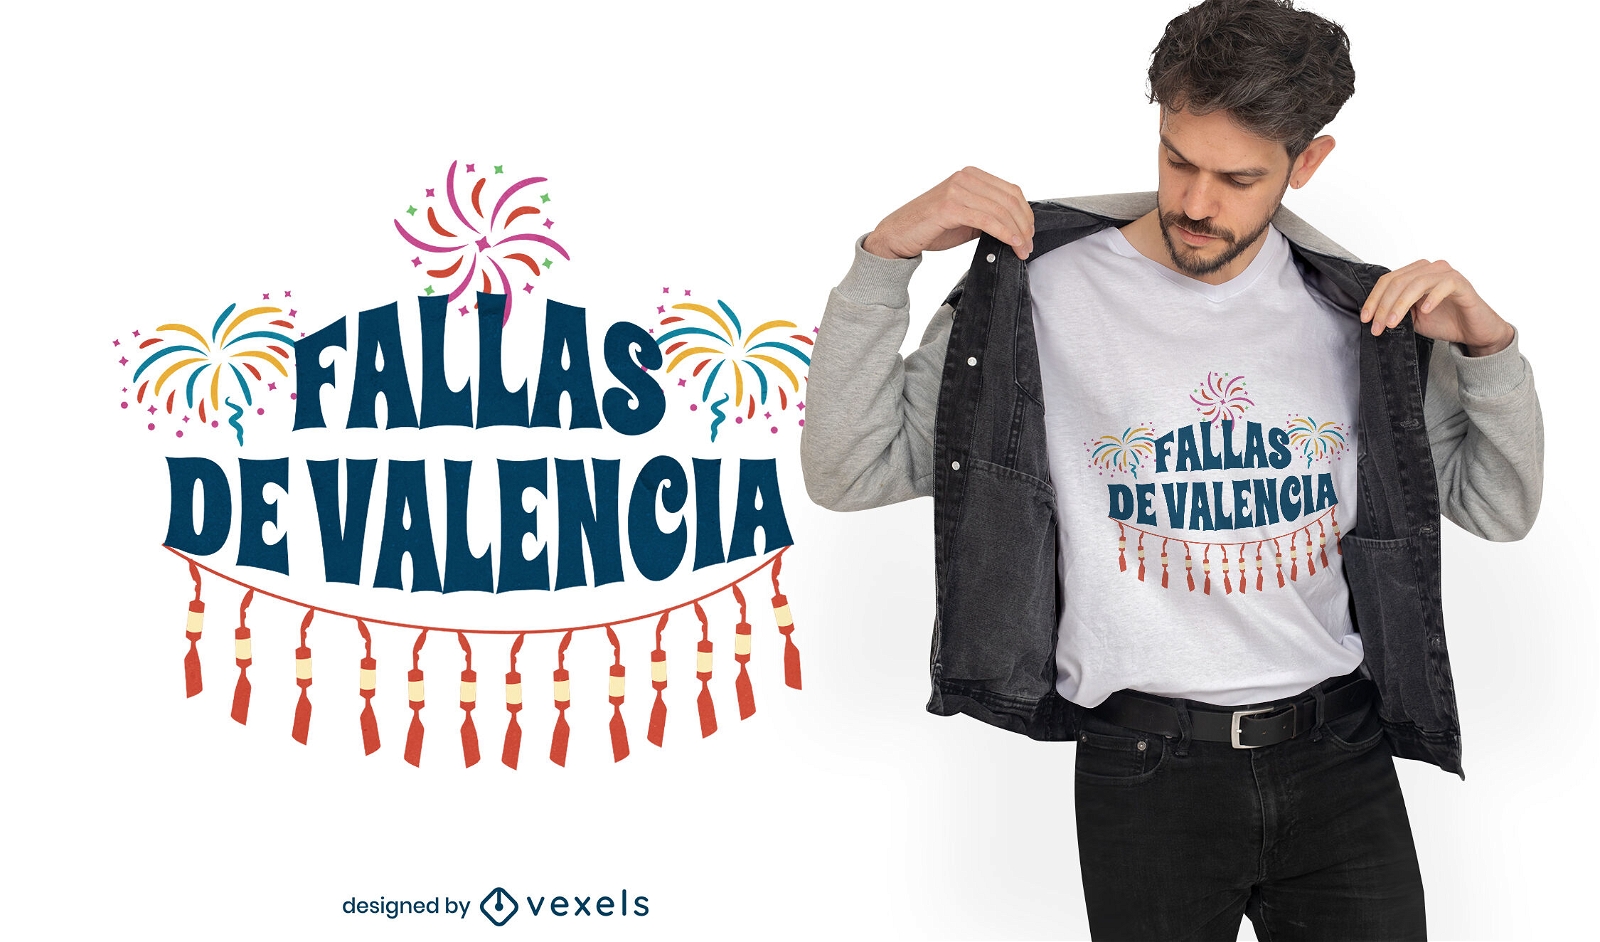 Spanien-Feiertagsfeuerwerk-T-Shirt Entwurf